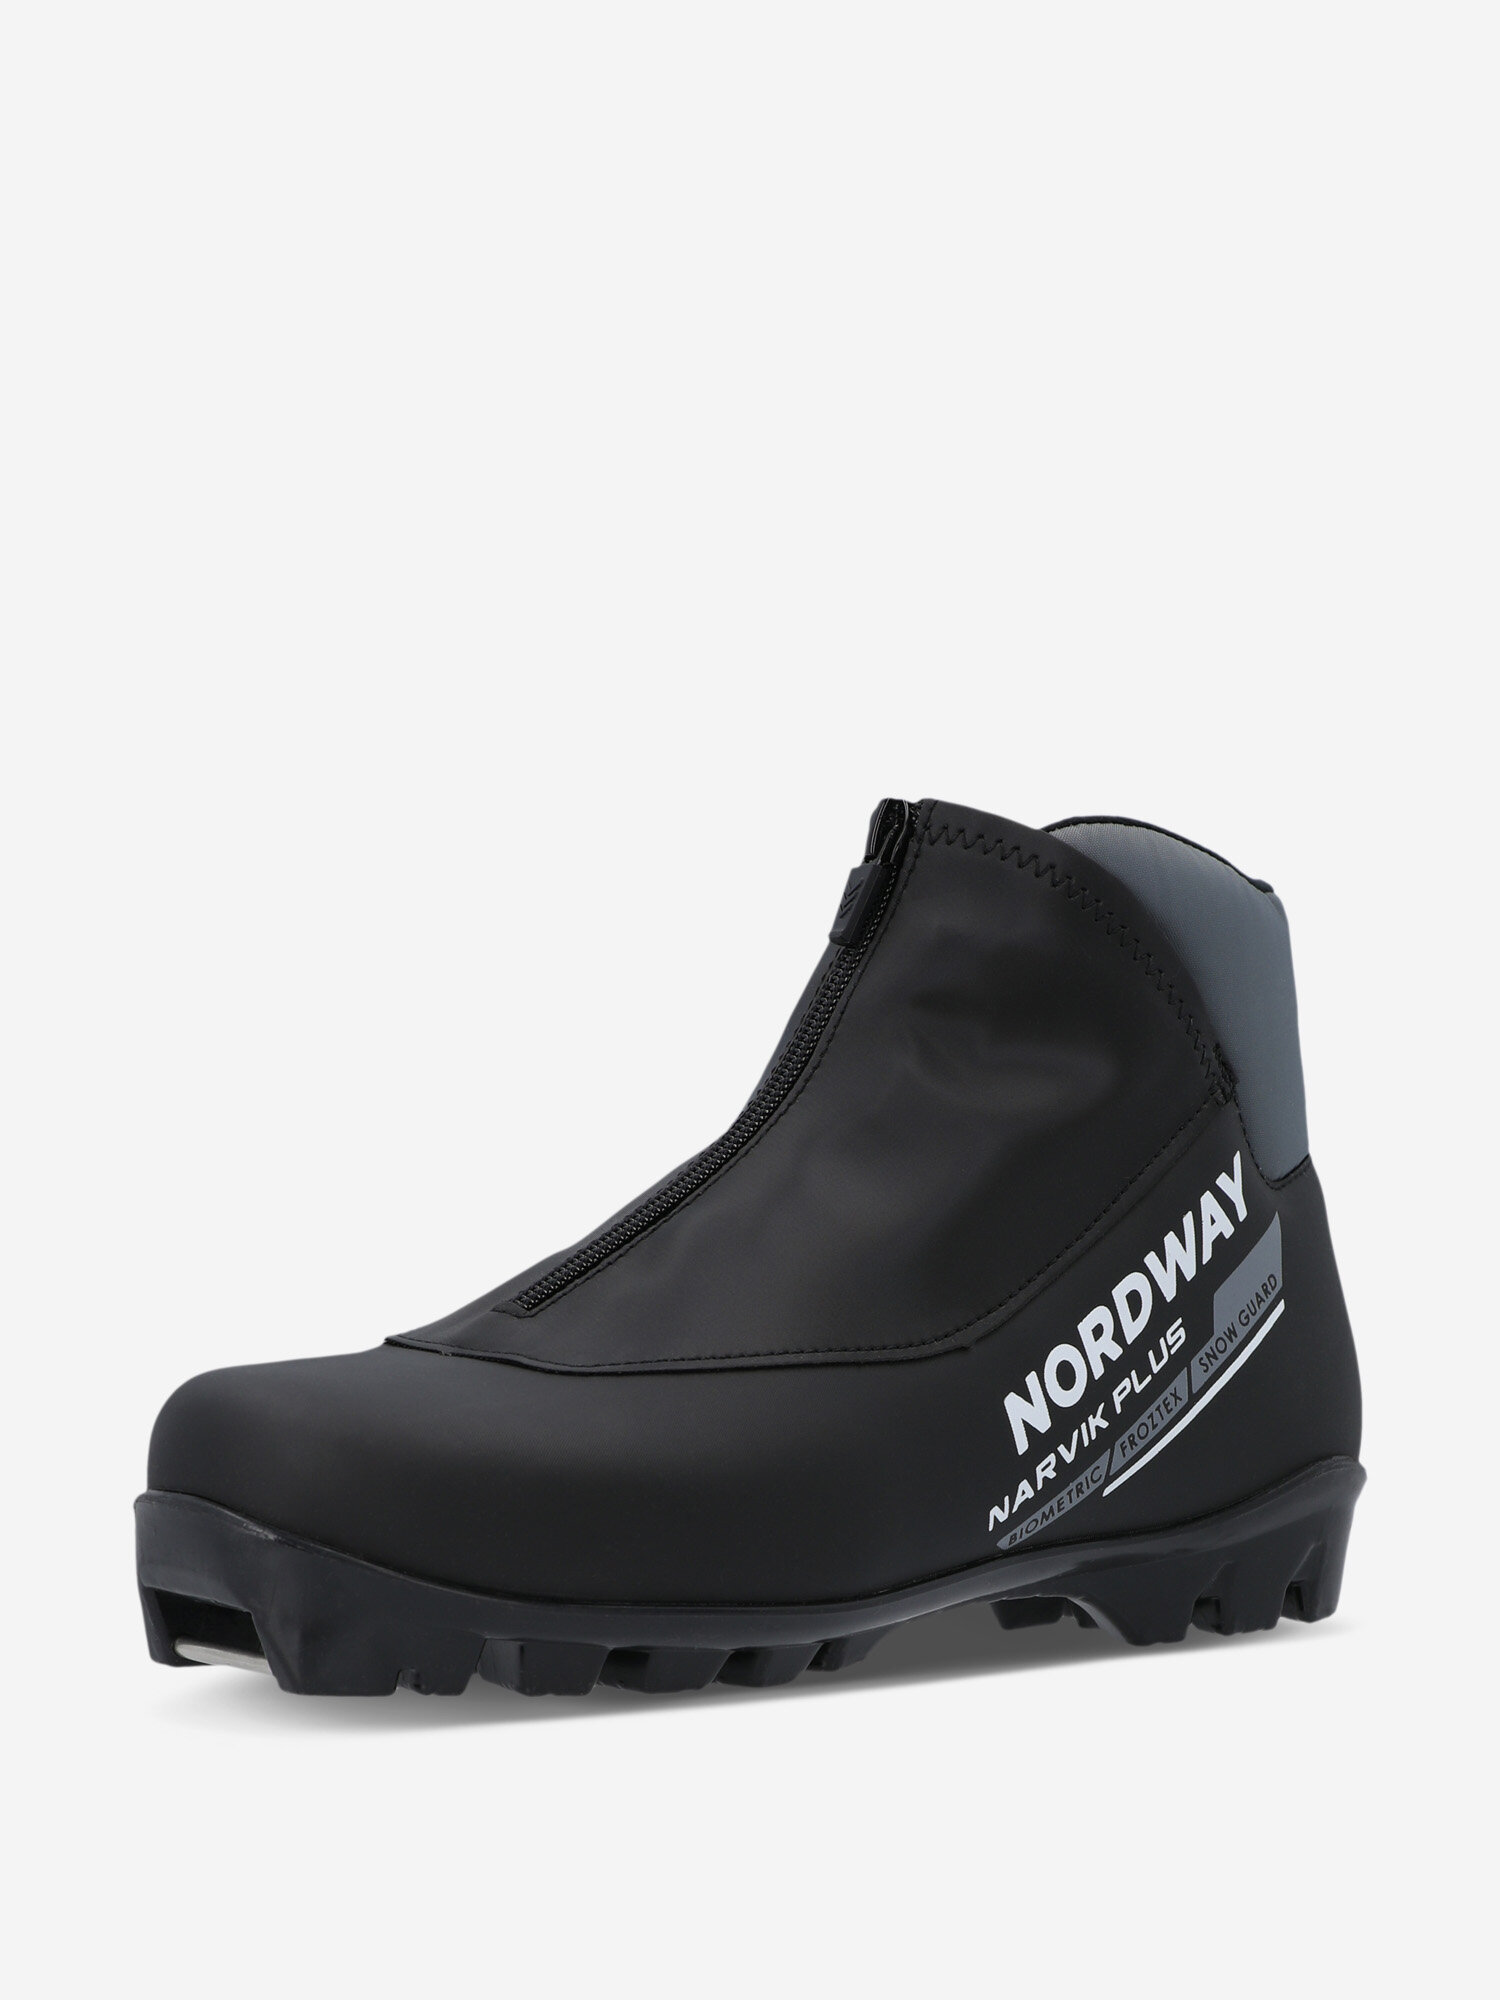 Ботинки для беговых лыж Nordway Narvik Plus NNN Черный; RUS: 39, Ориг: 40